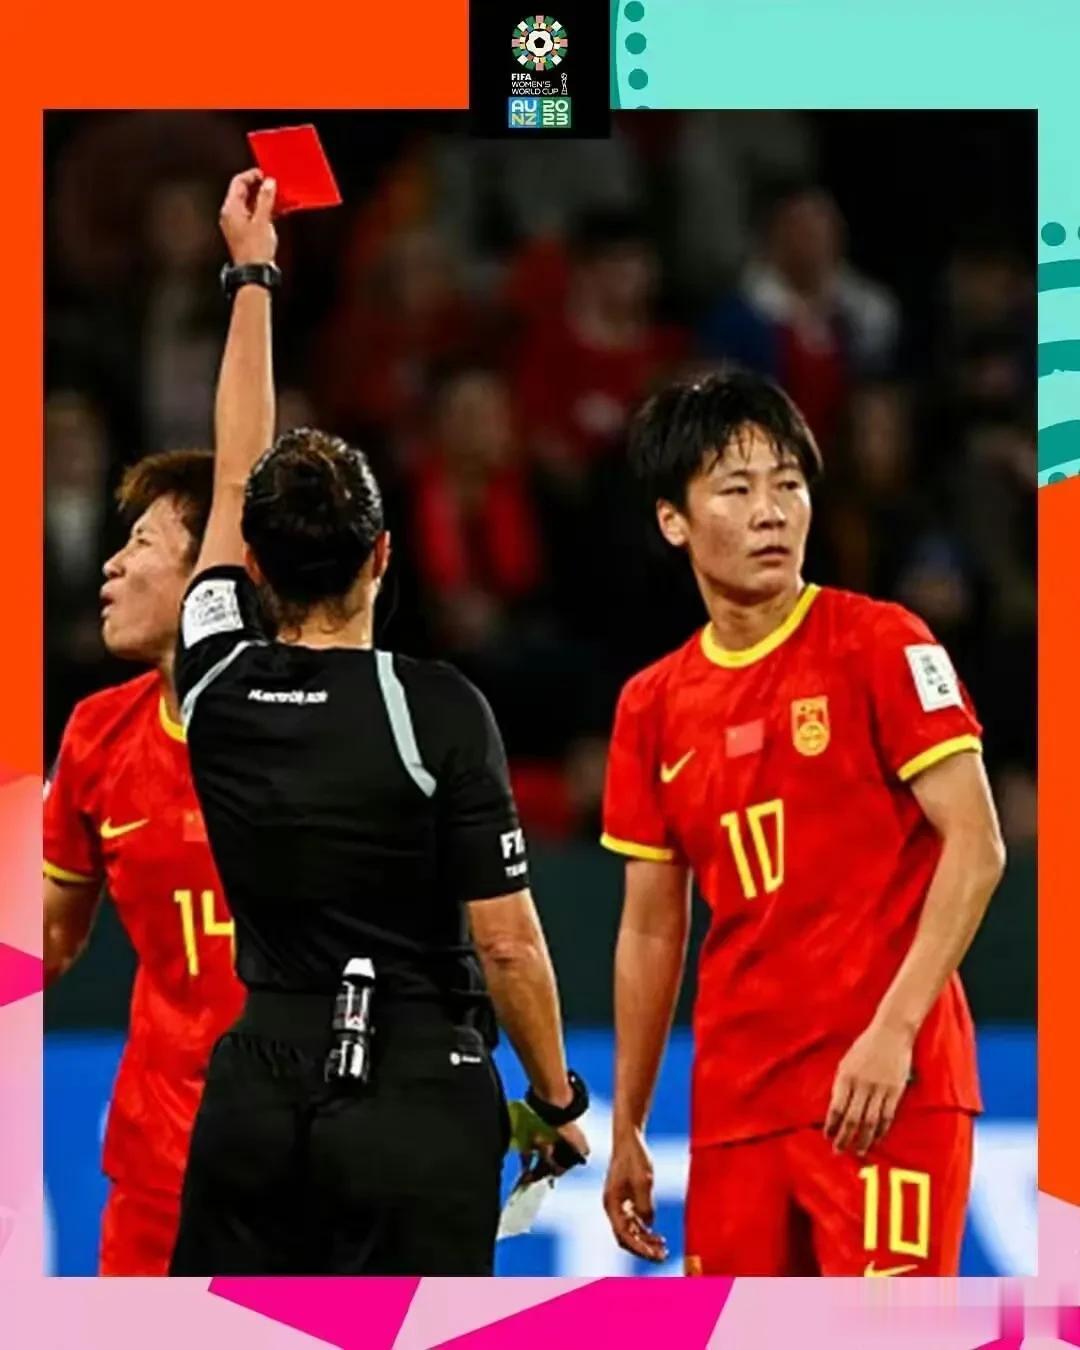 她这一脚，把中国女足出线机会踢没了！
中国女足10号张睿在世界杯第二场小组赛中蹬(1)